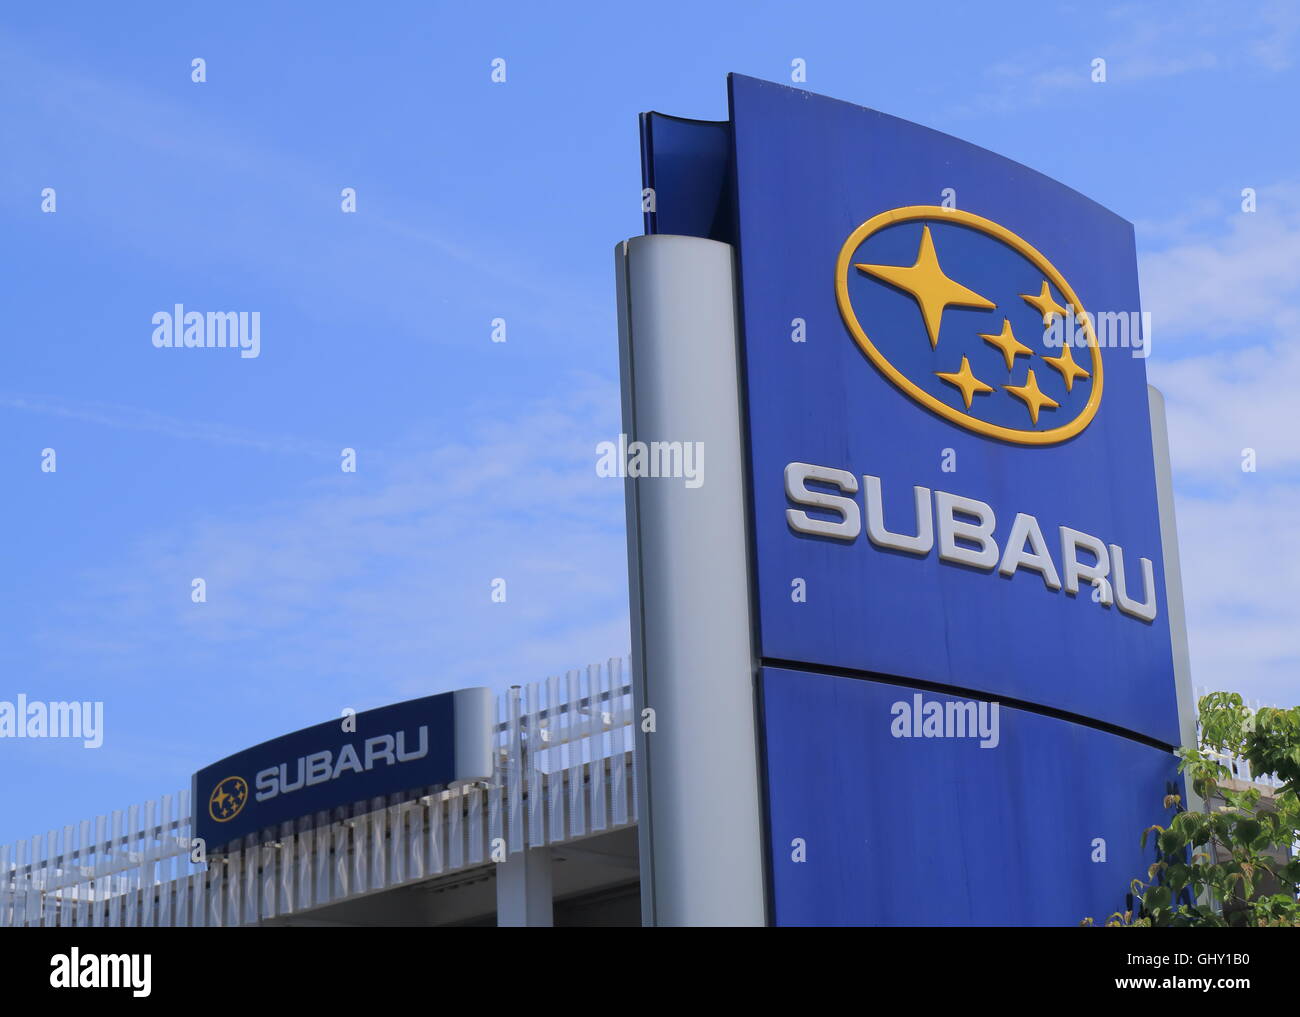 SUBARU car manufacturer Japan Stock Photo